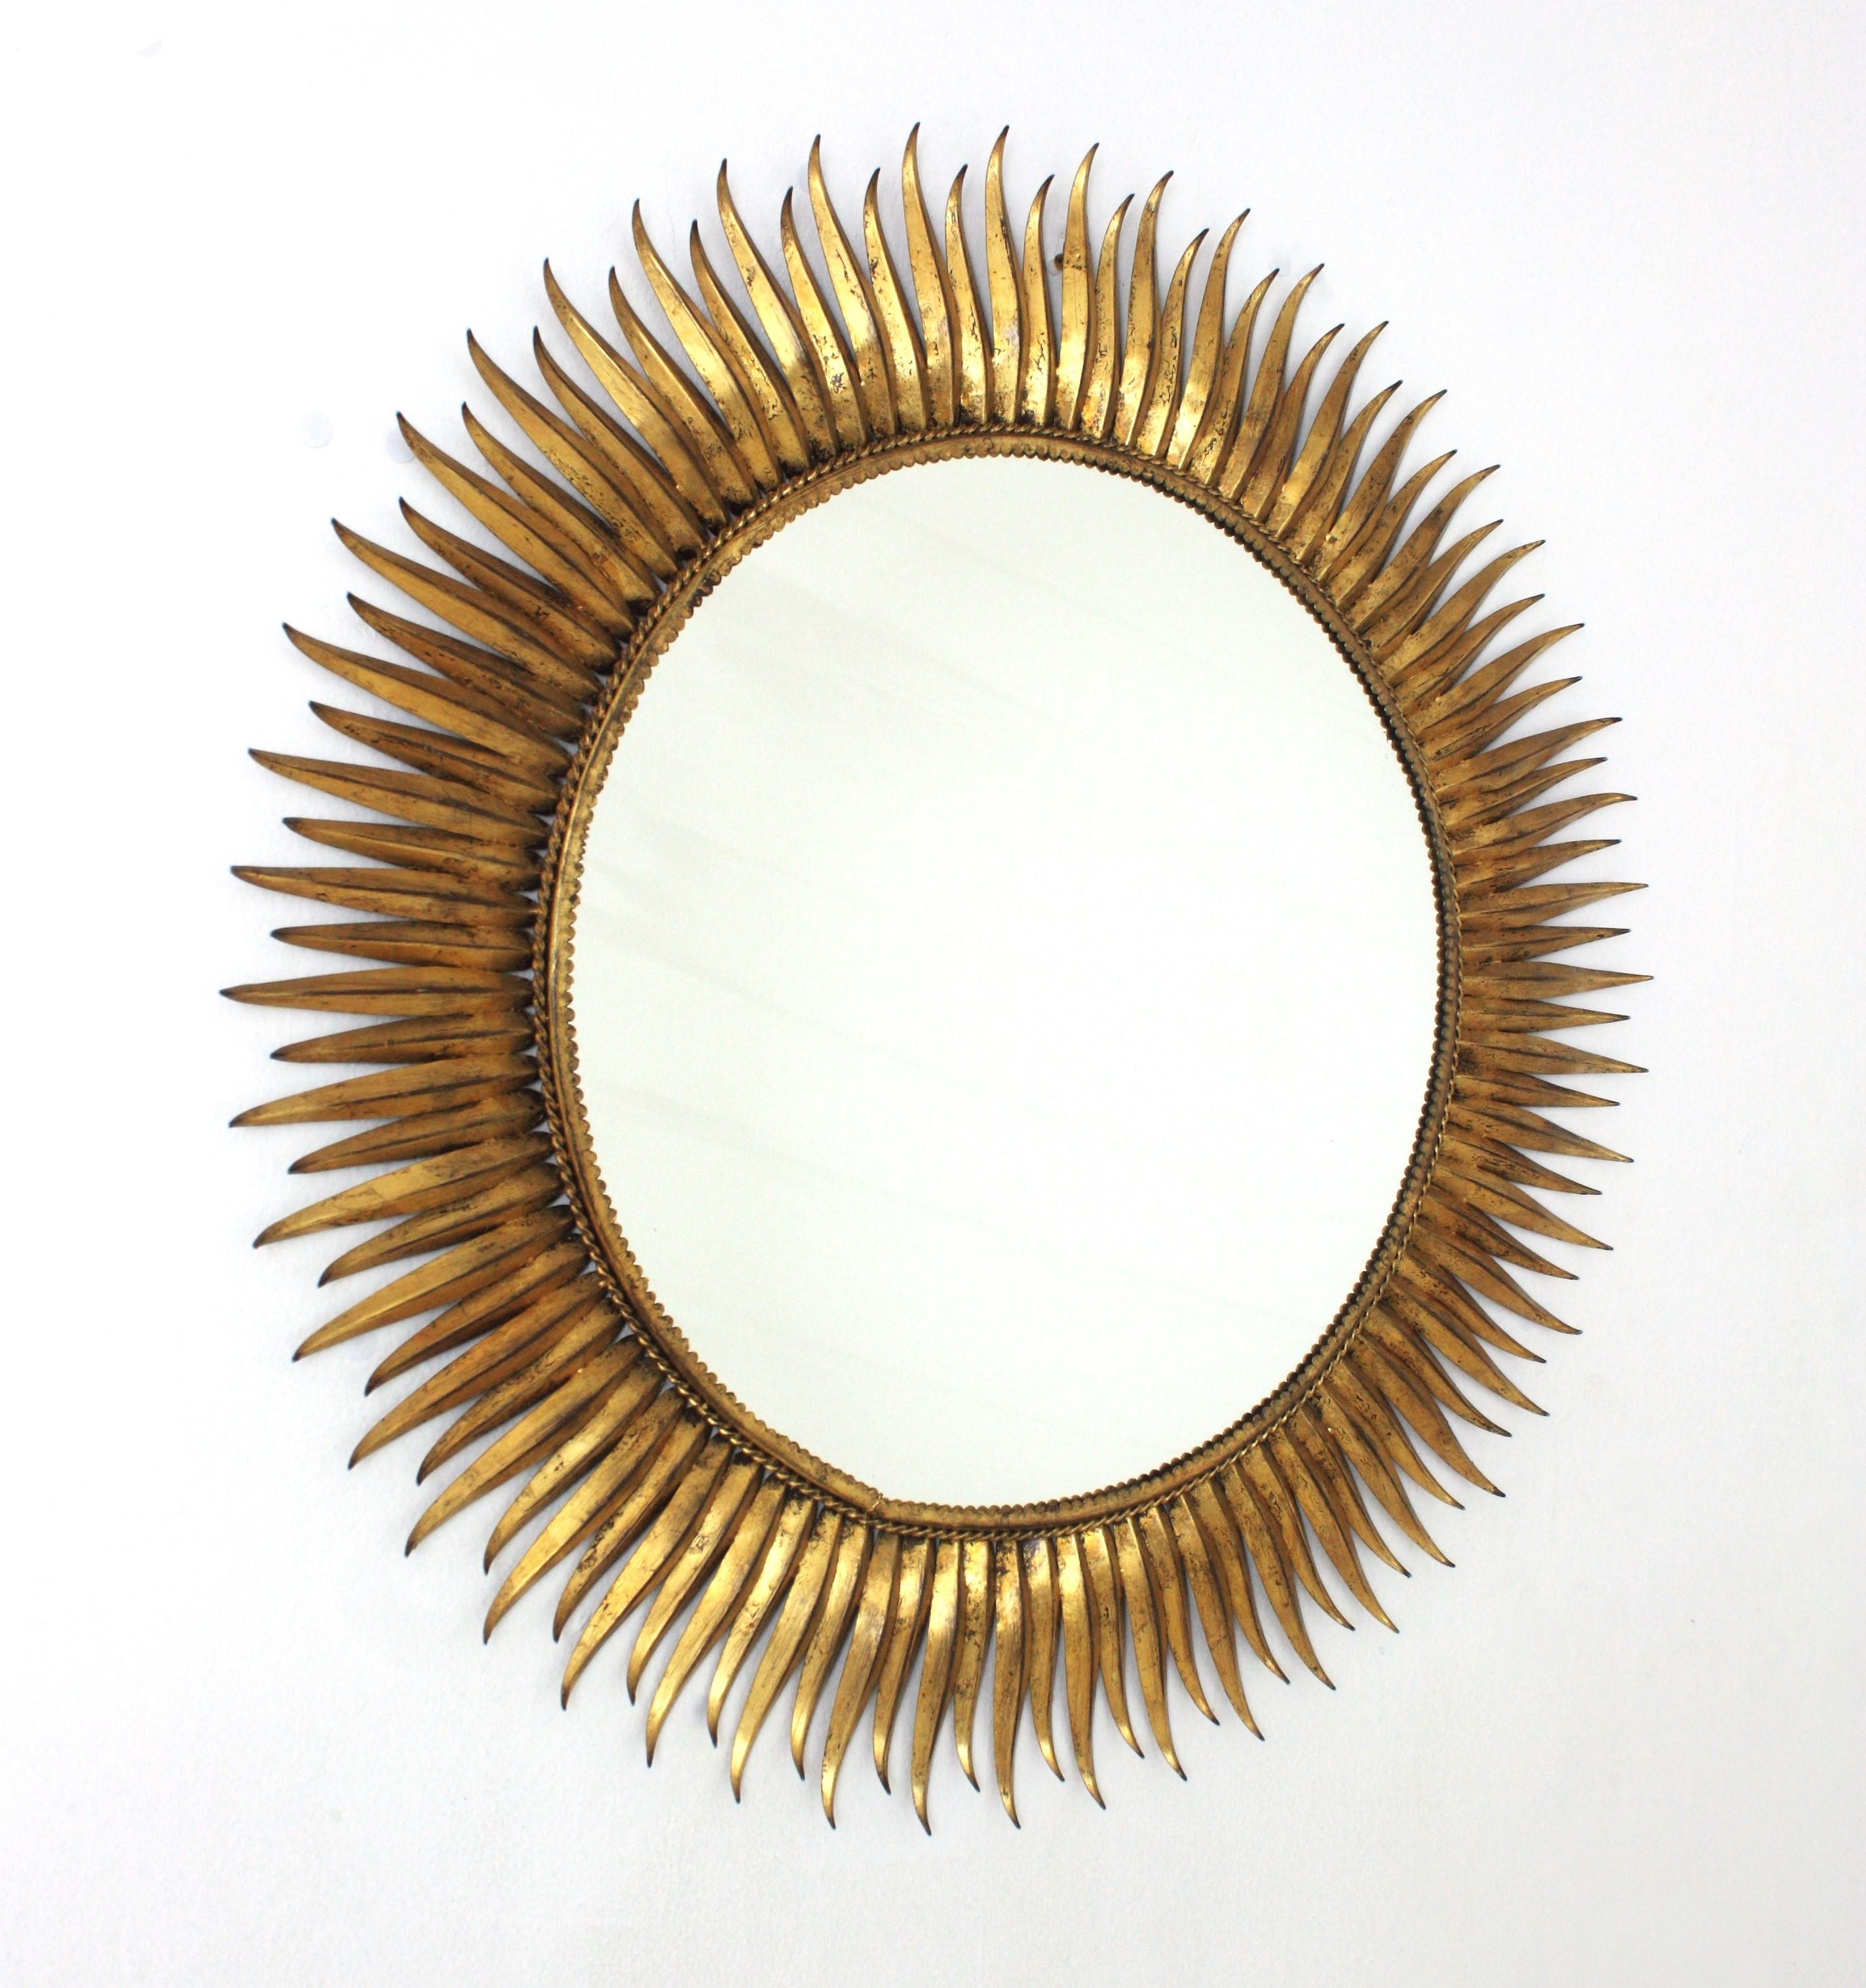 Magnifique miroir à cils en fer doré de grande taille. Espagne, années 1950
Le cadre est entièrement réalisé à la main avec une alternance de rayons droits et courbes martelés à la main en forme de cils. Finition en feuille d'or. Magnifique dorure